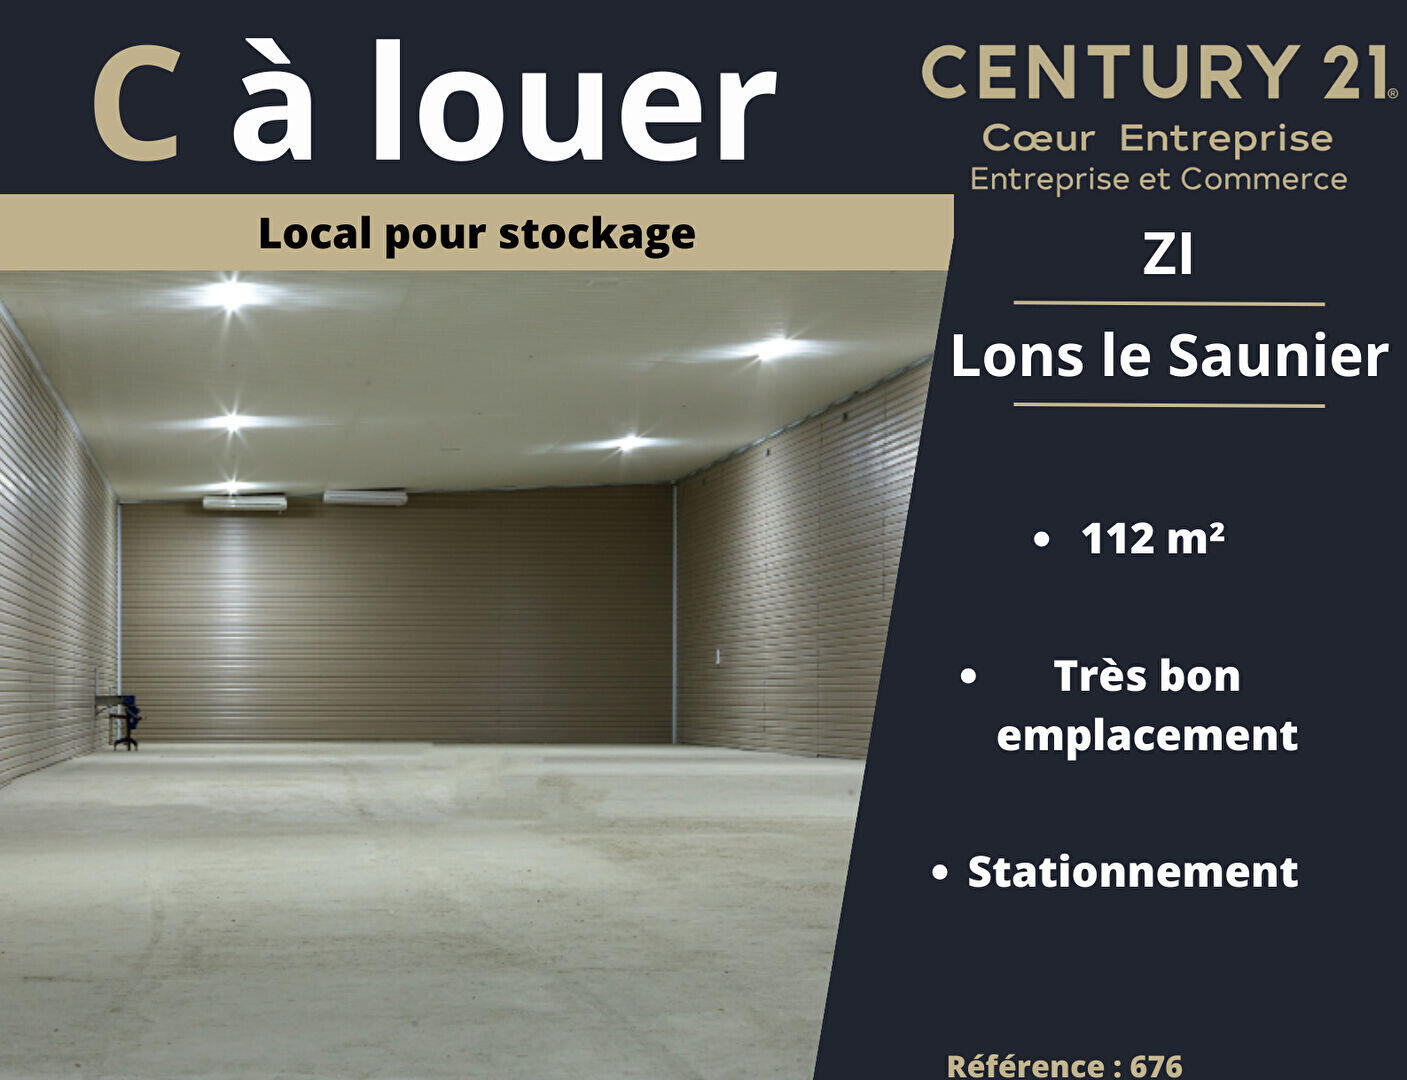 A louer local stockage 114m² en ZI Lons le Saunier